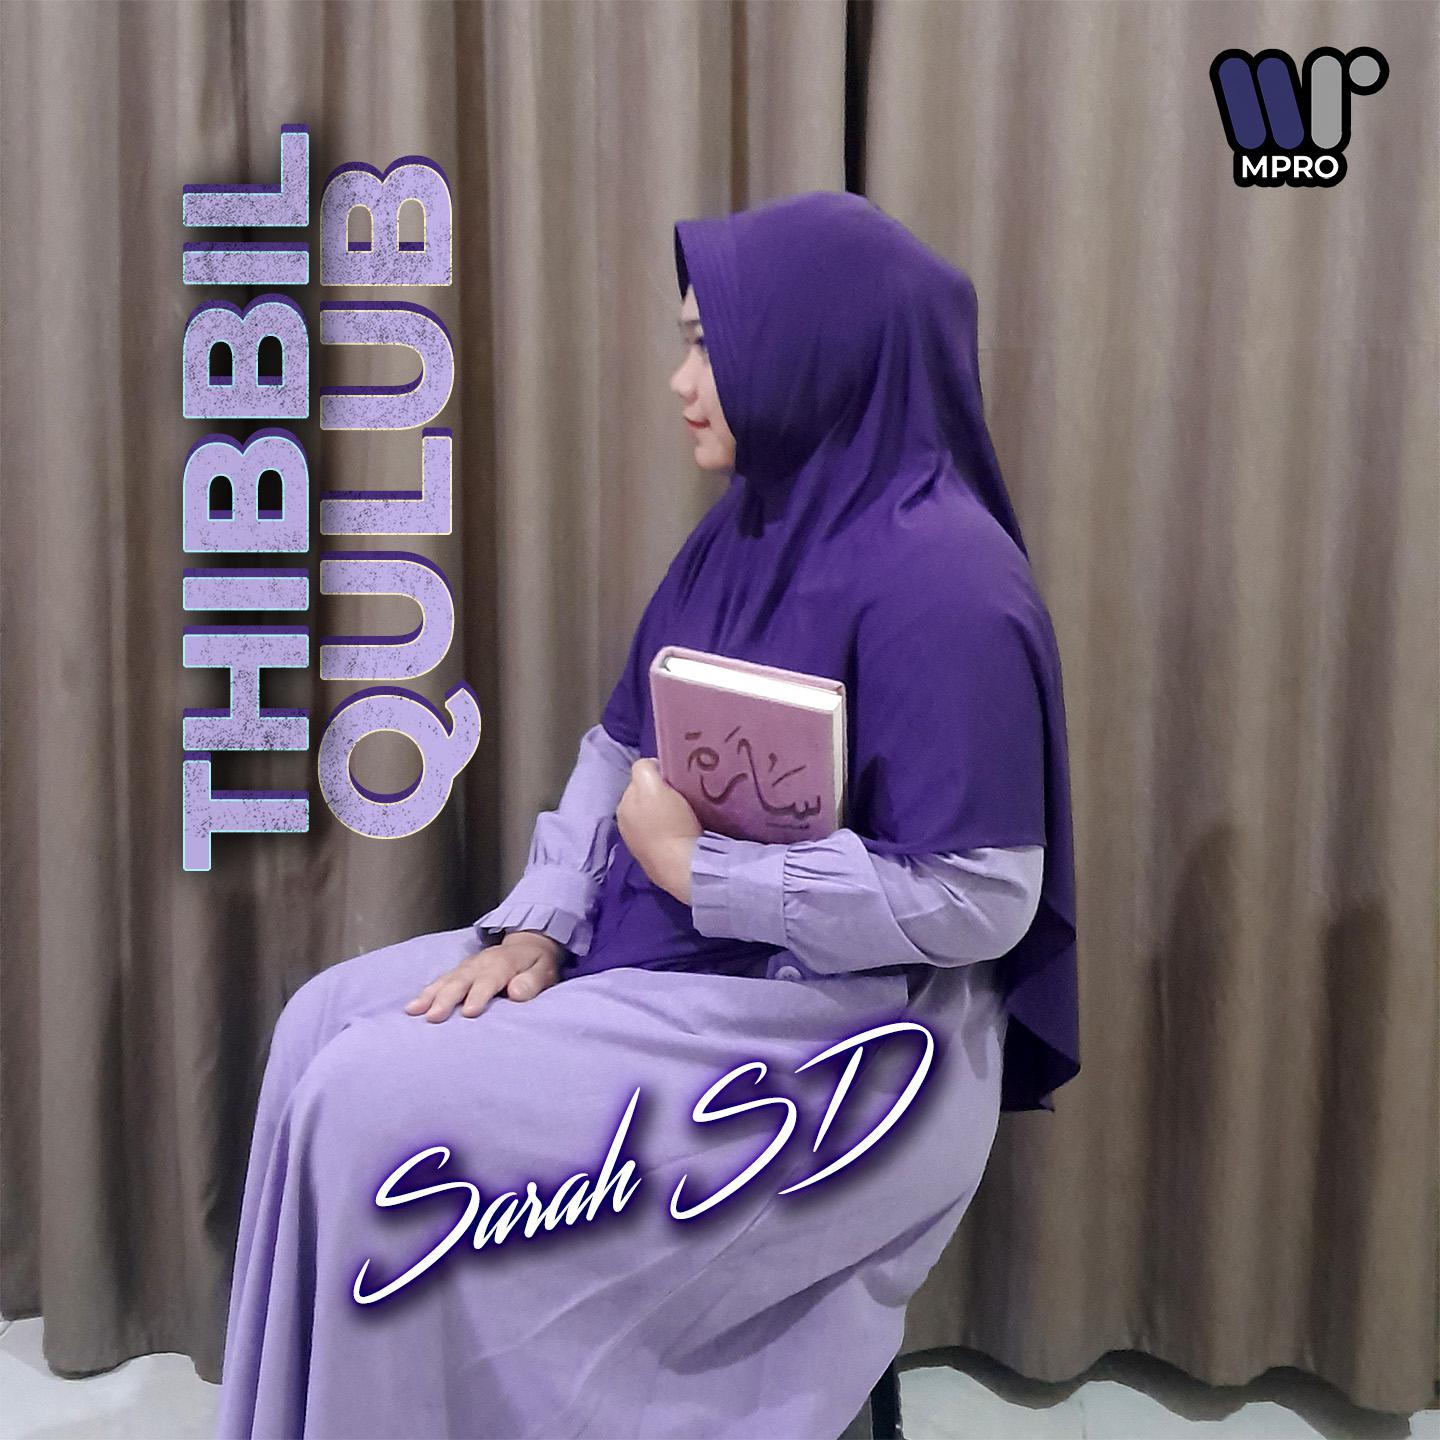 Постер альбома Thibbil Qulub